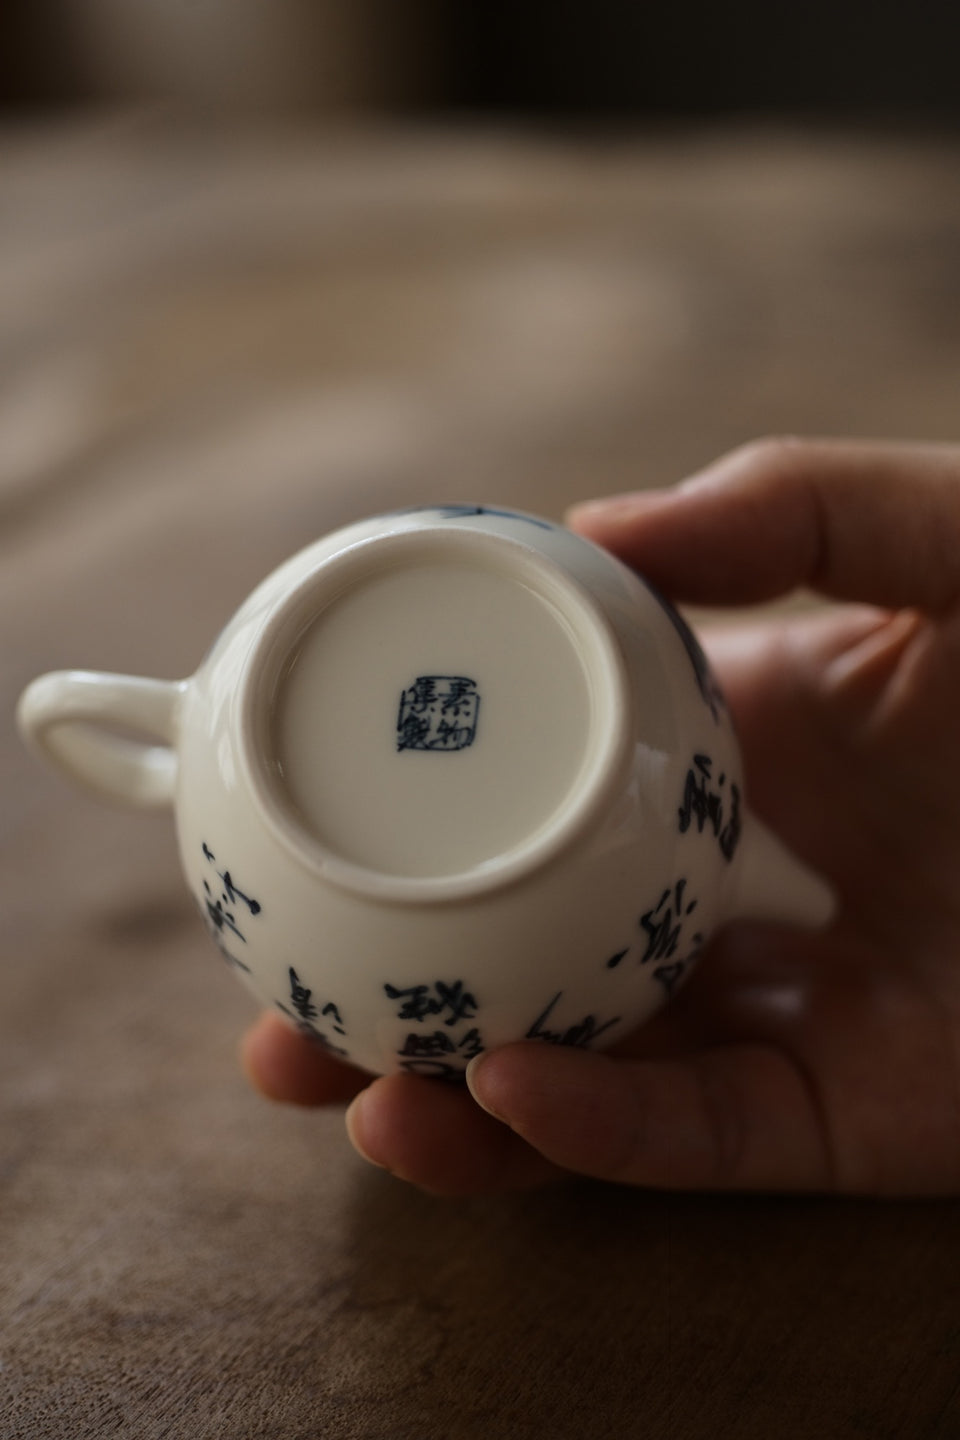 Qinghua Pine Tree and Crane Teapot